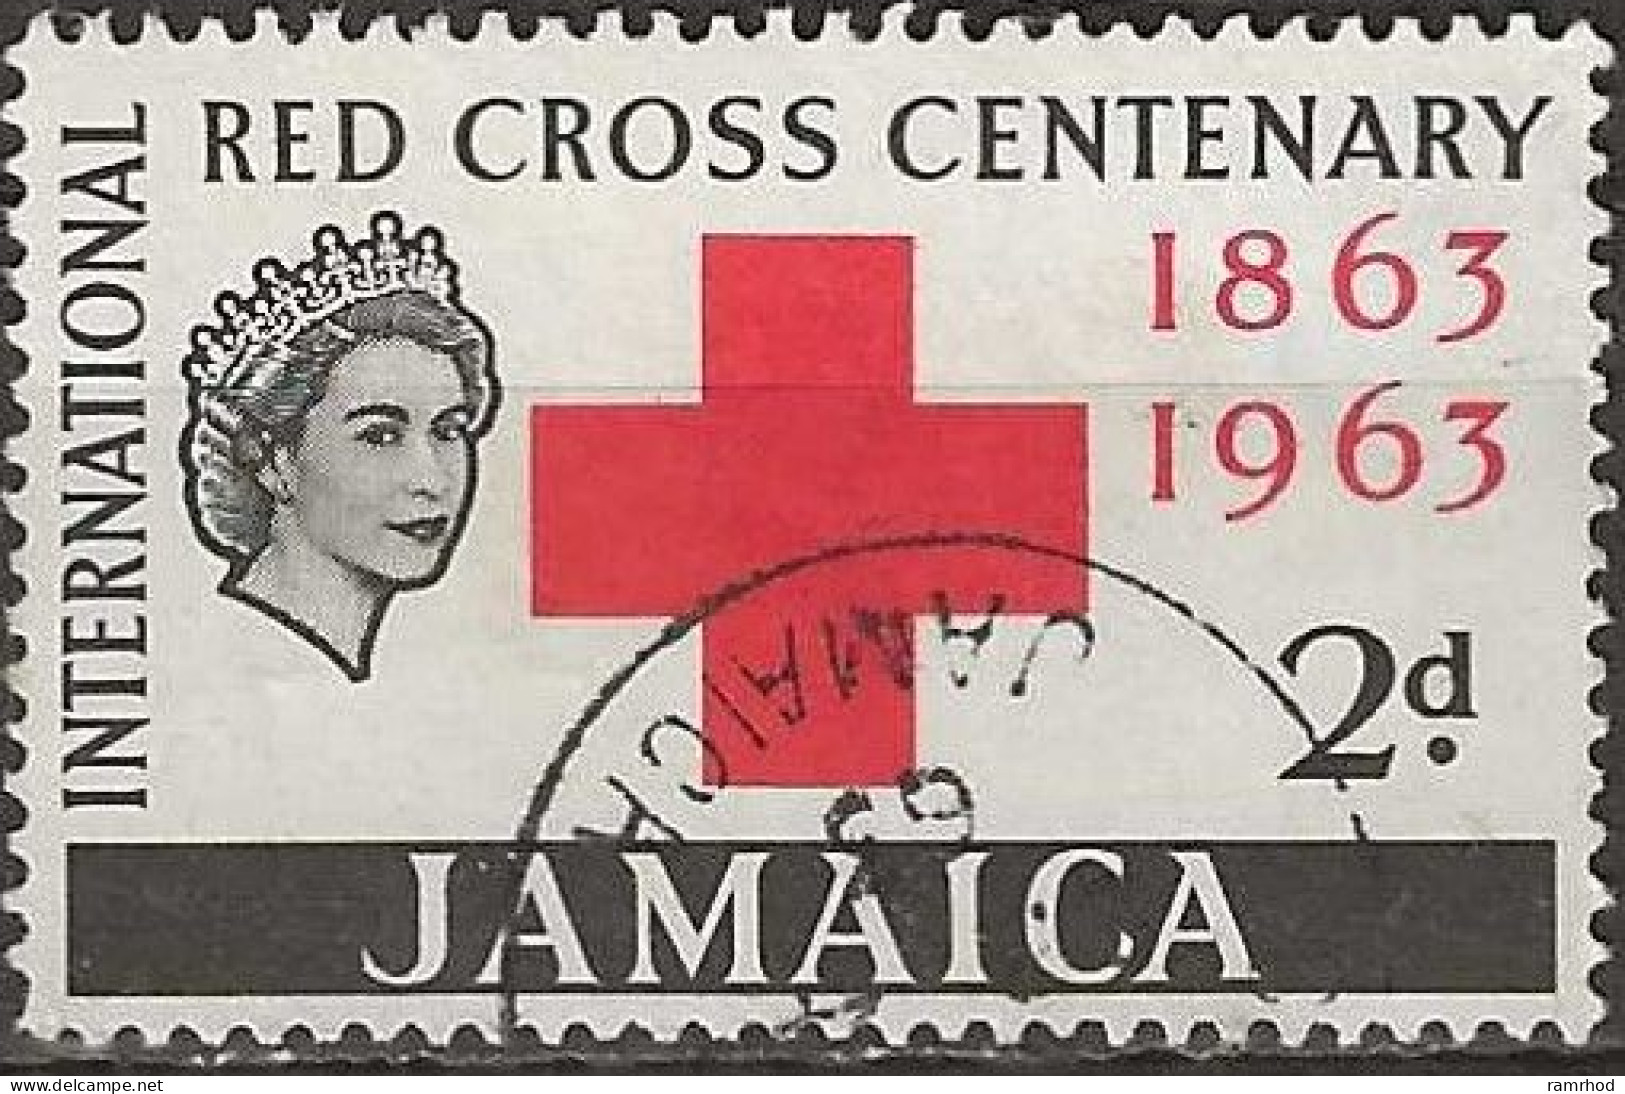 JAMAICA 1963 Centenary Of Red Cross - 2d - Red Cross Emblem FU - Jamaica (1962-...)